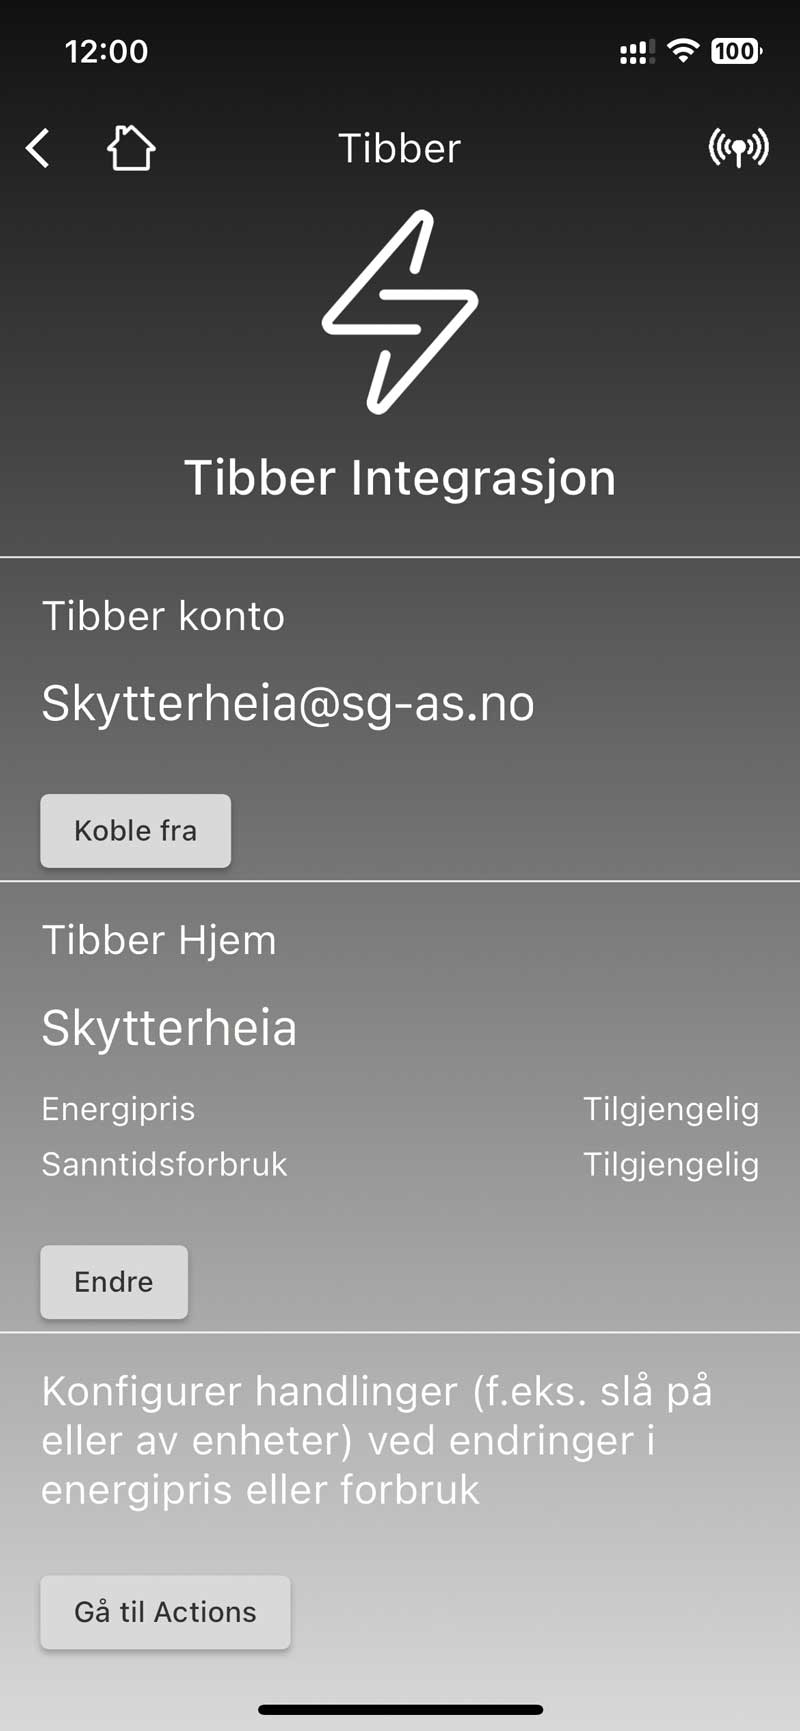 Tibber-integrasjon.jpg